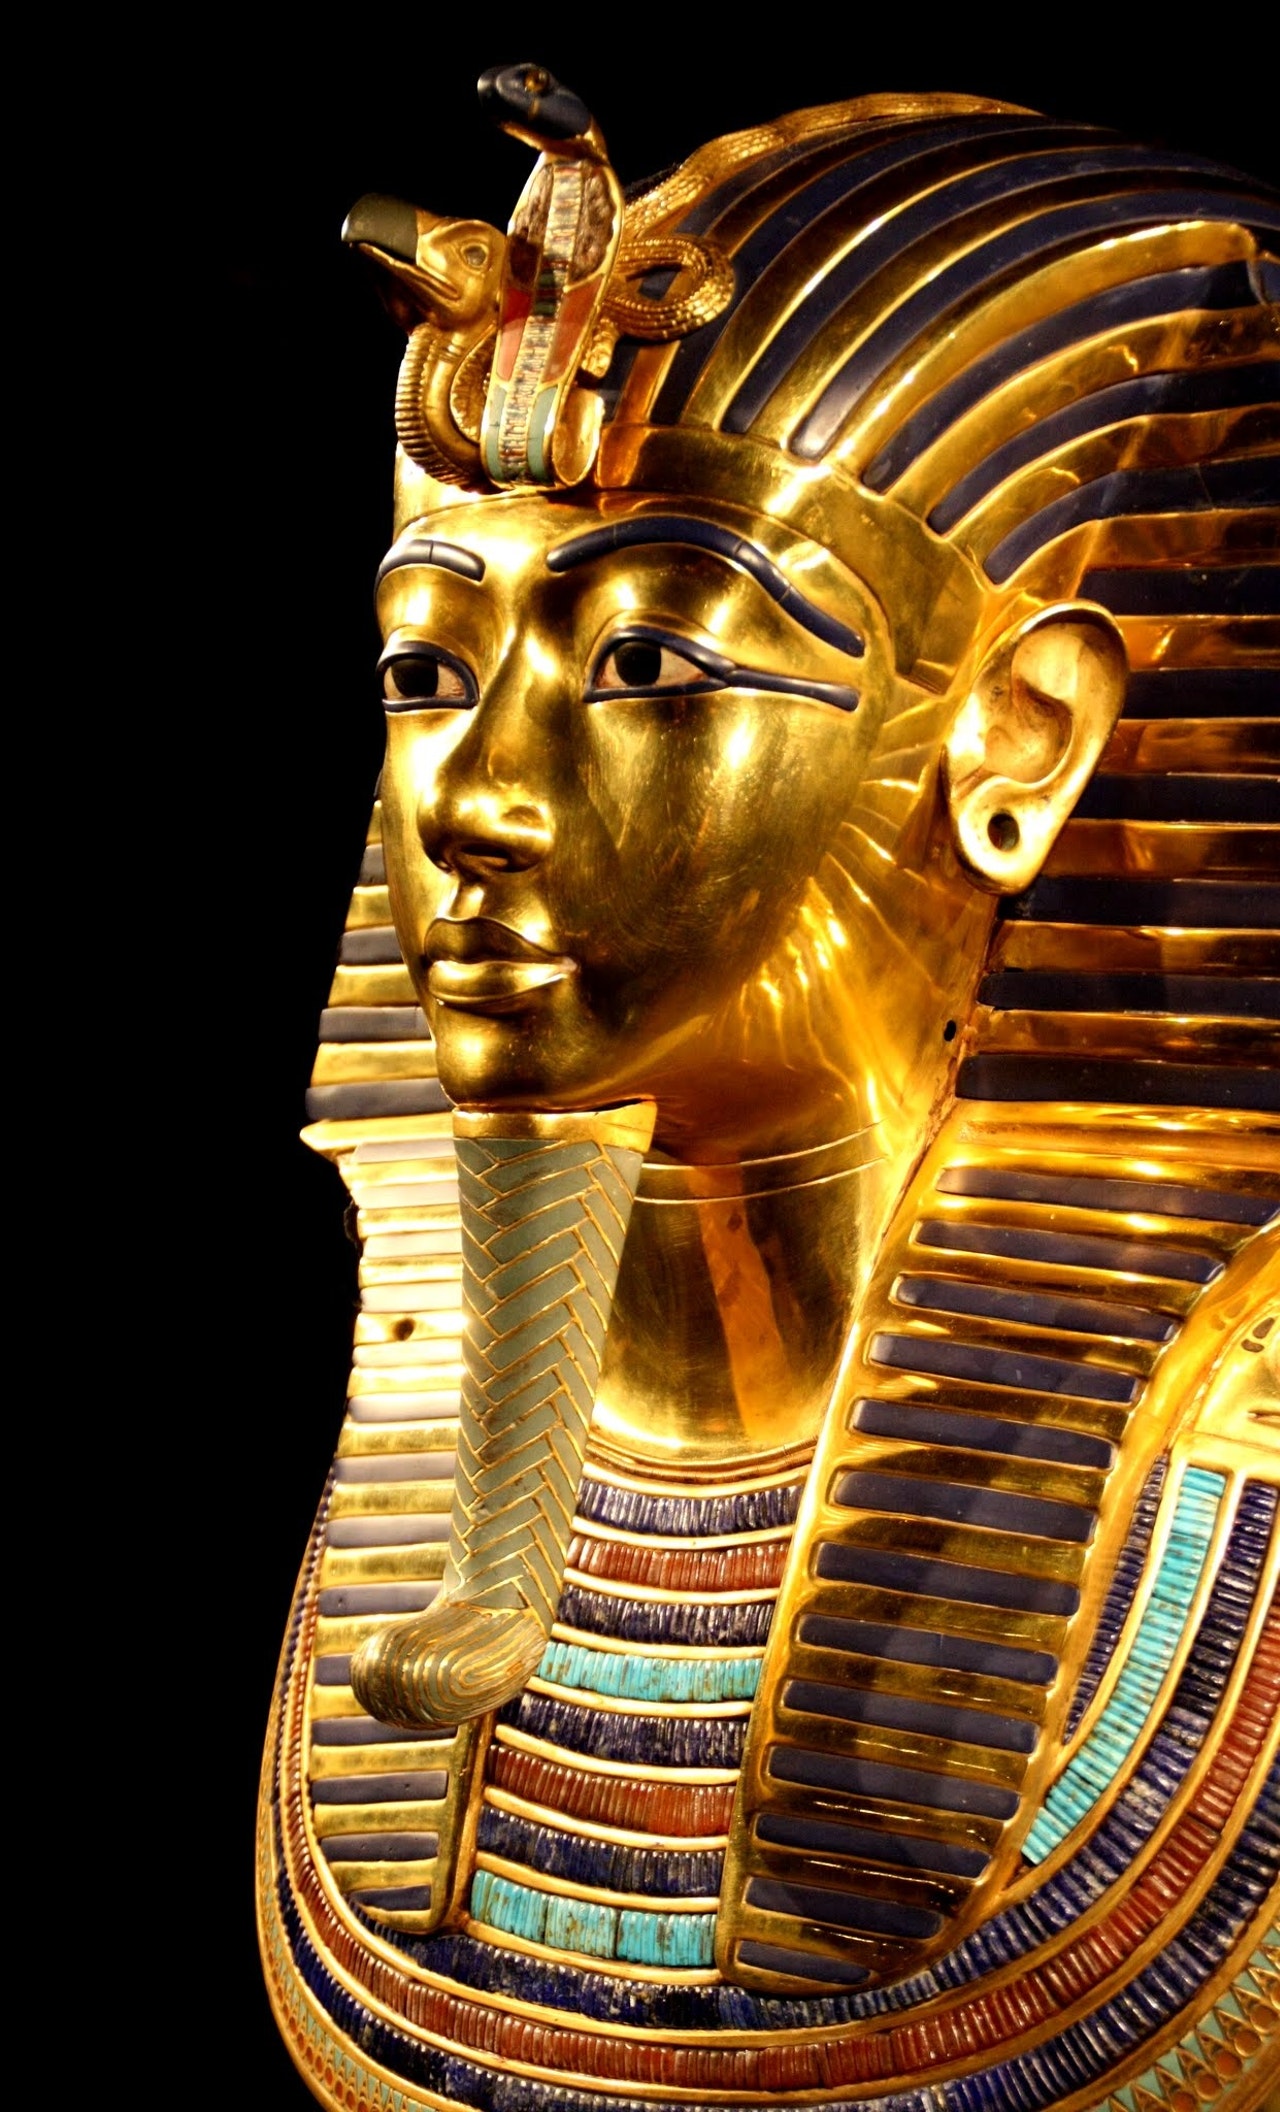 Египет открыл первый завод археологических копий на Ближнем Востоке